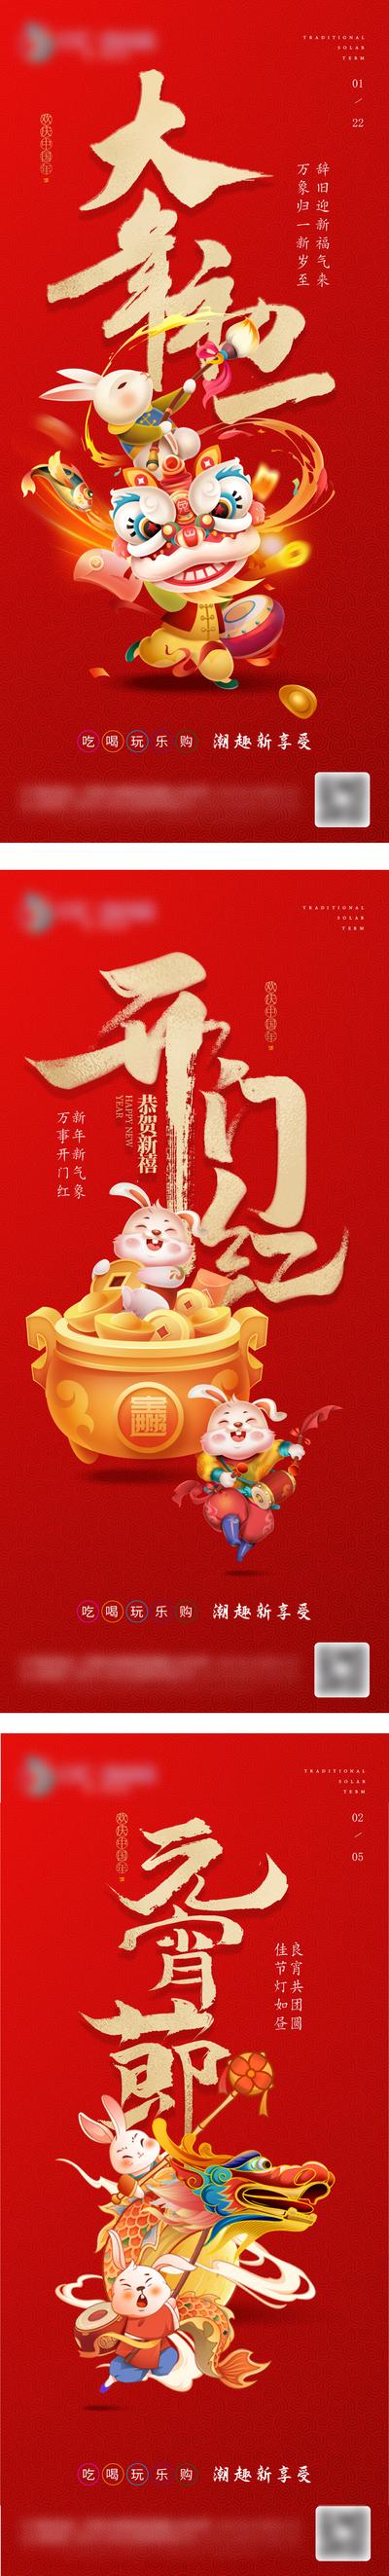 南门网 海报 中国传统节日 春节 初一 元宵节 开门红 兔年 舞狮 舞龙 卡通 插画 系列